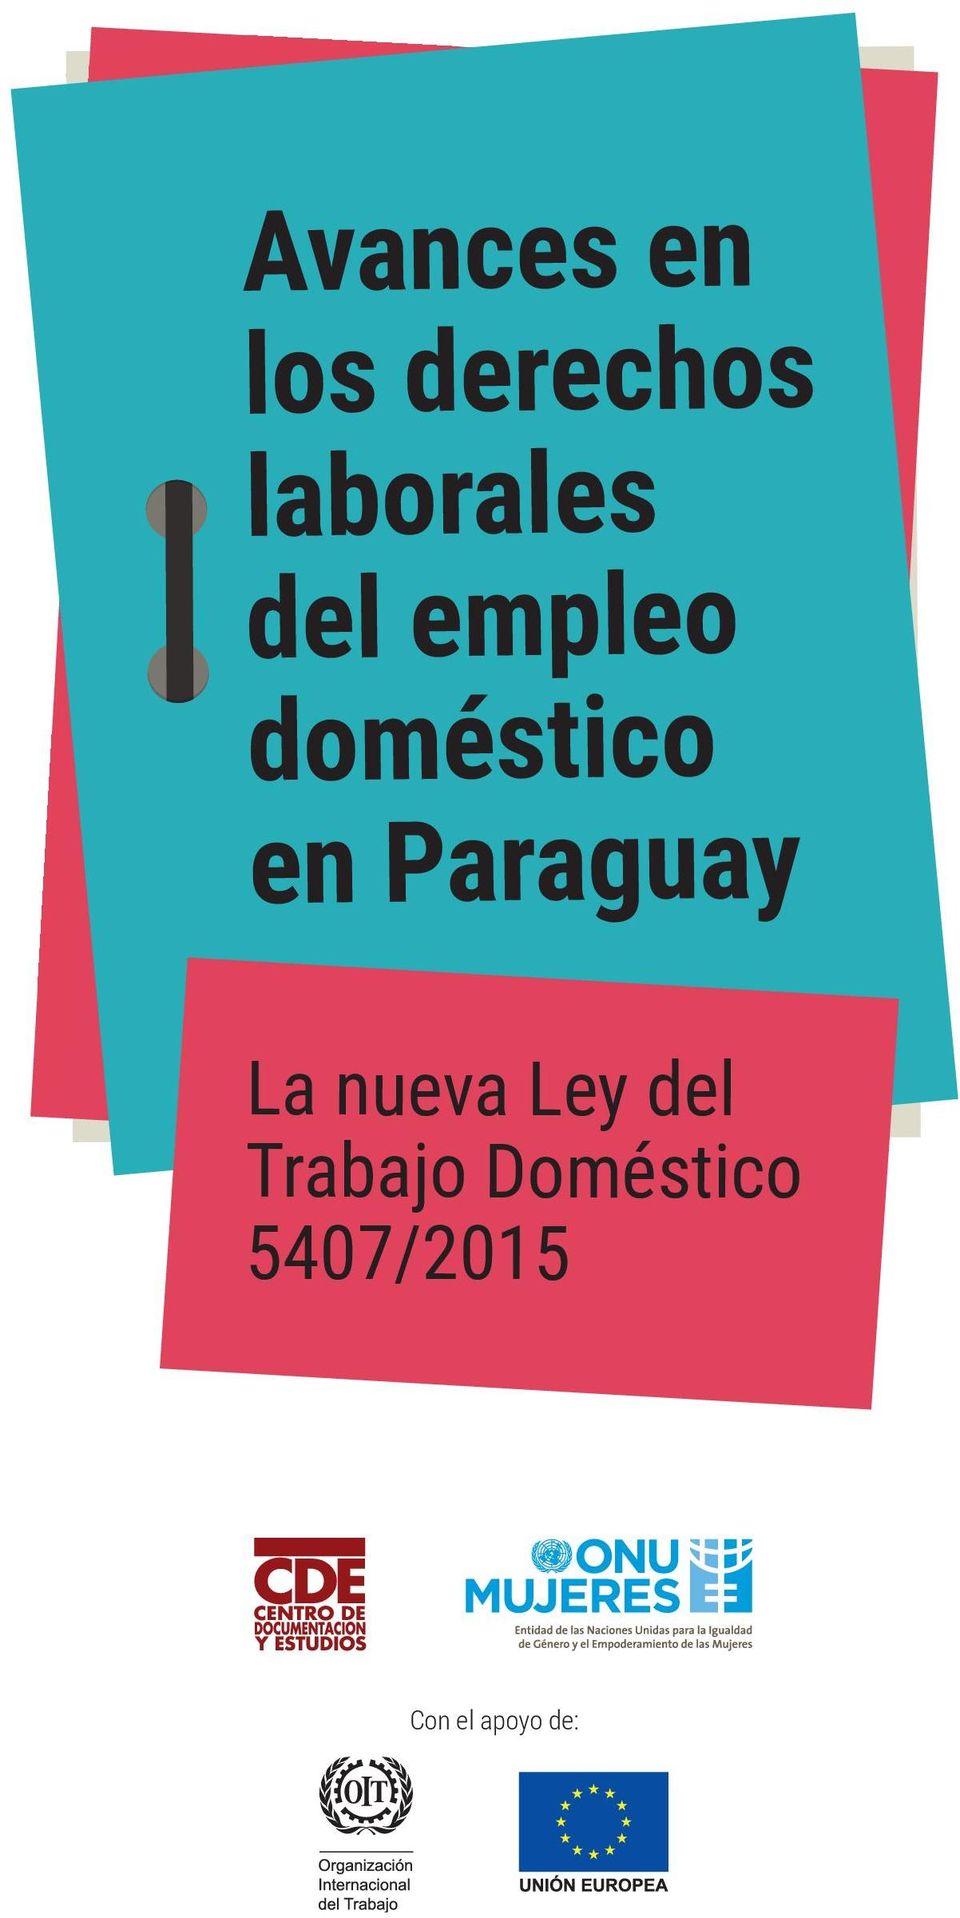 en Paraguay La nueva Ley del